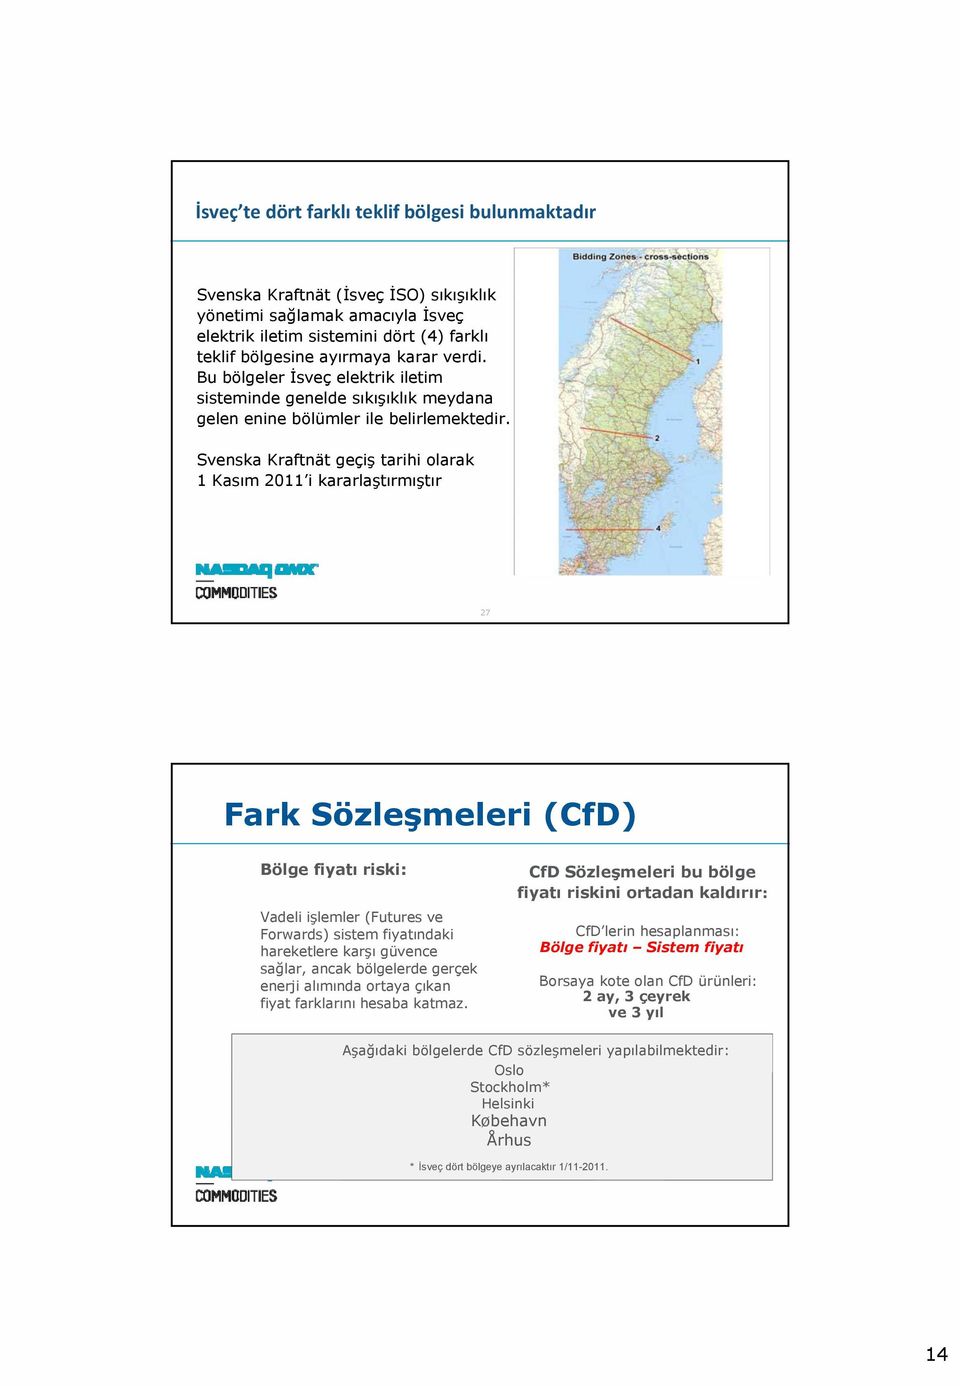 Svenska Kraftnät geçiş tarihi olarak 1 Kasım 2011 i kararlaştırmıştır 27 Fark Sözleşmeleri (CfD) Bölge fiyatı riski: Vadeli işlemler (Futures ve Forwards) sistem fiyatındaki hareketlere karşı güvence